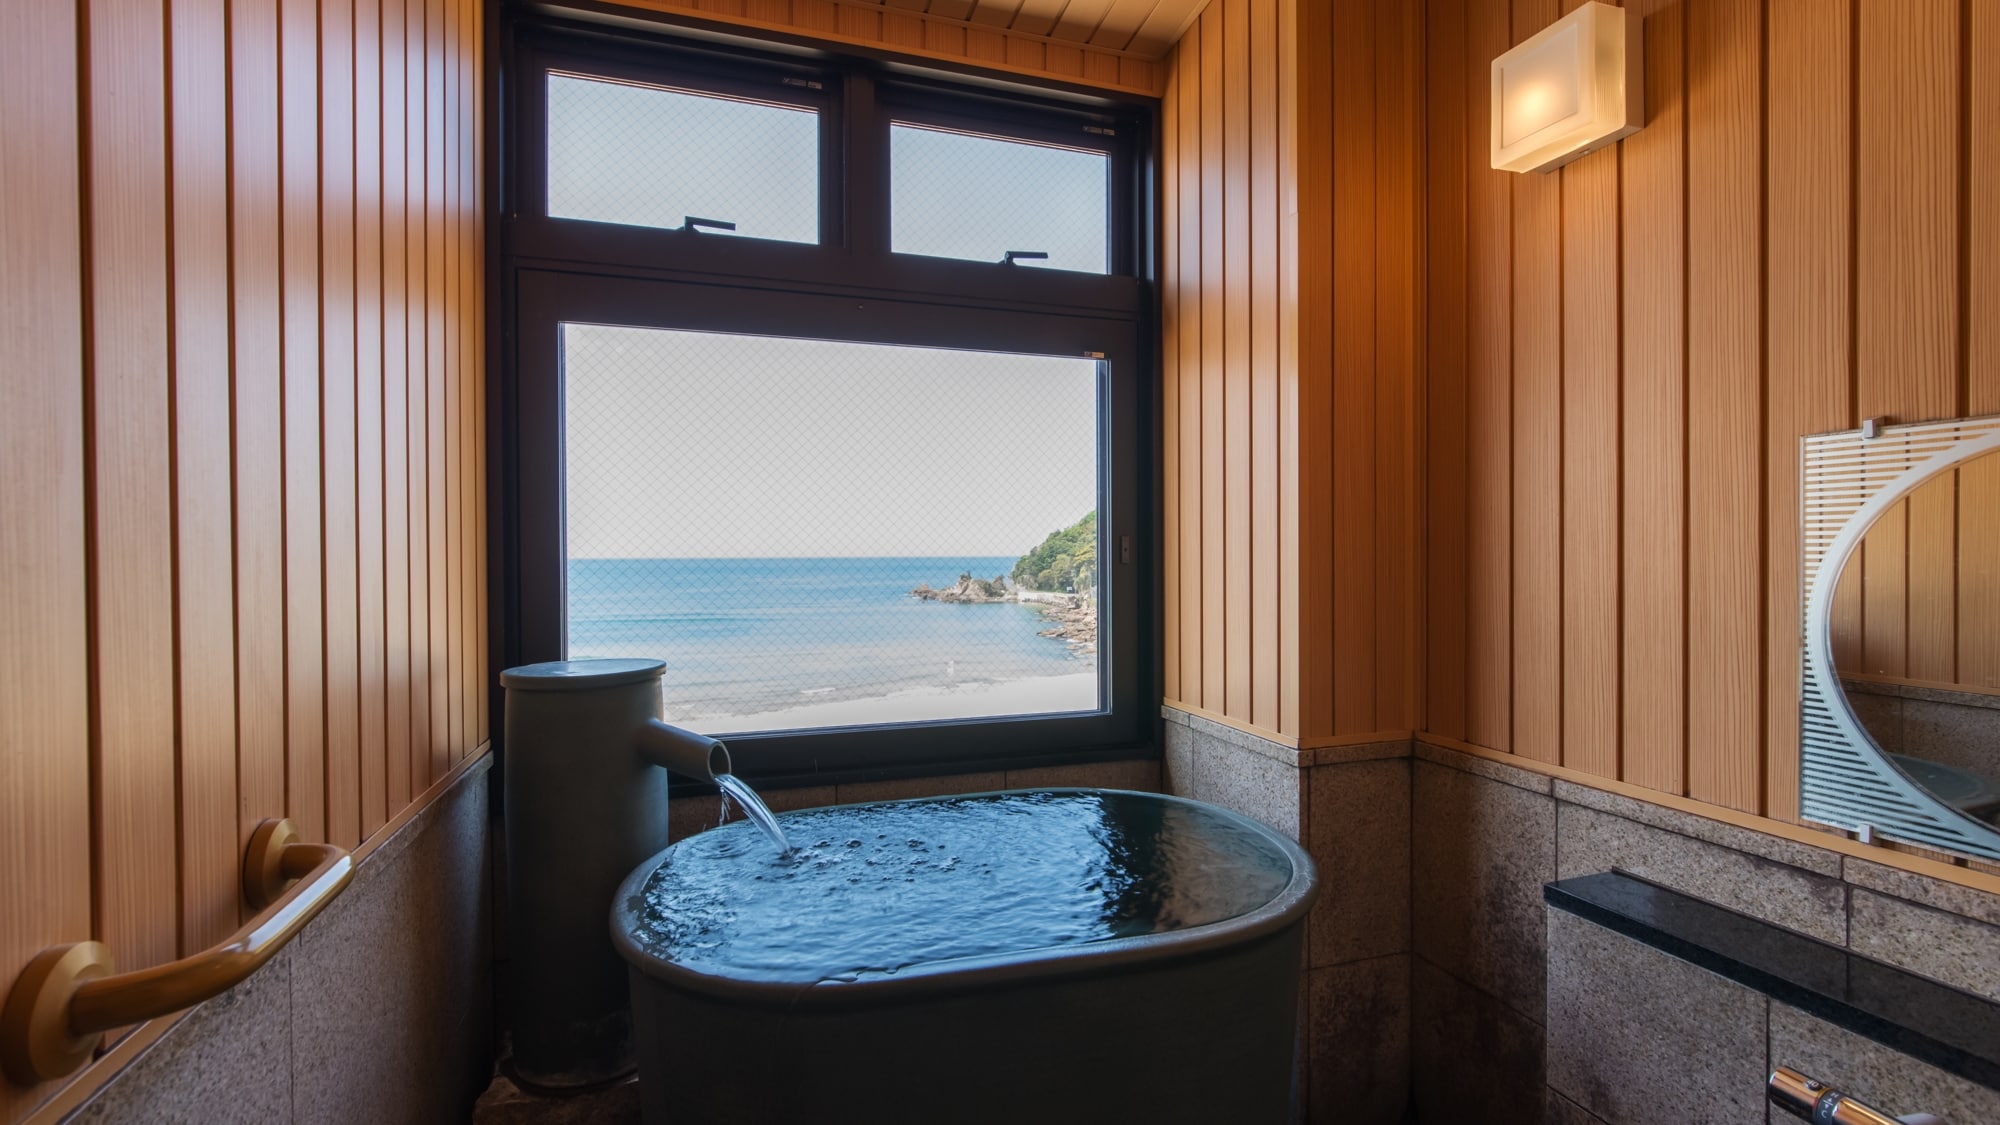 Anda dapat menikmati mandi sambil memandangi pemandangan laut yang indah dari pemandian observasi di ruang tamu paviliun.